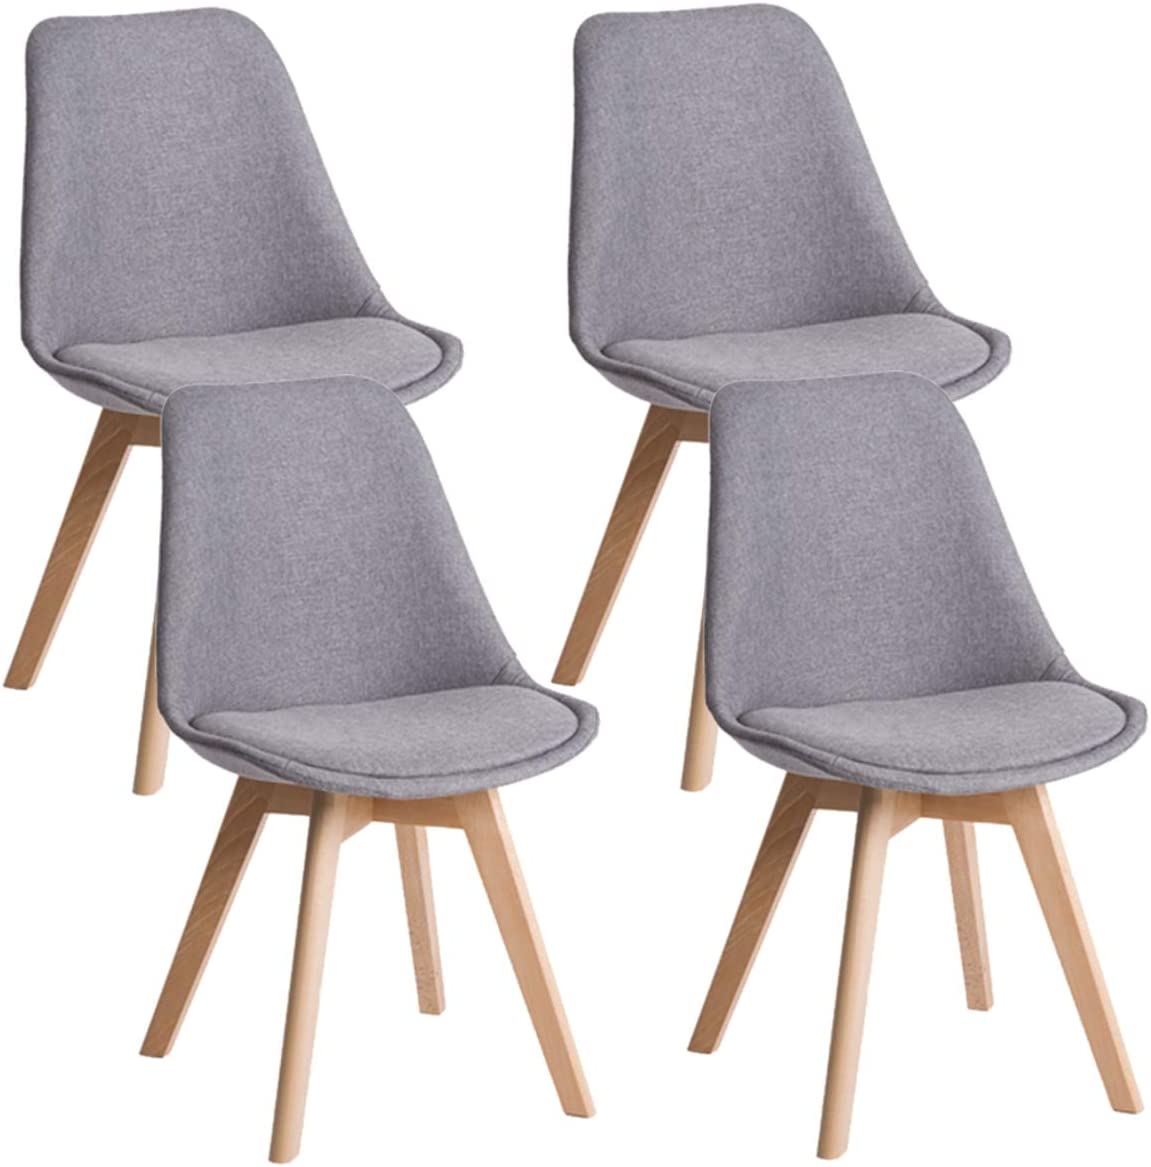 Deuline Oslo Esszimmerstuhl Küchenstuhl SGS Zertifiziert Massivholz Beine Polsterstuhl Retro Design Stühle Lehnstuhl Stoffbezug, 4 Stück Set